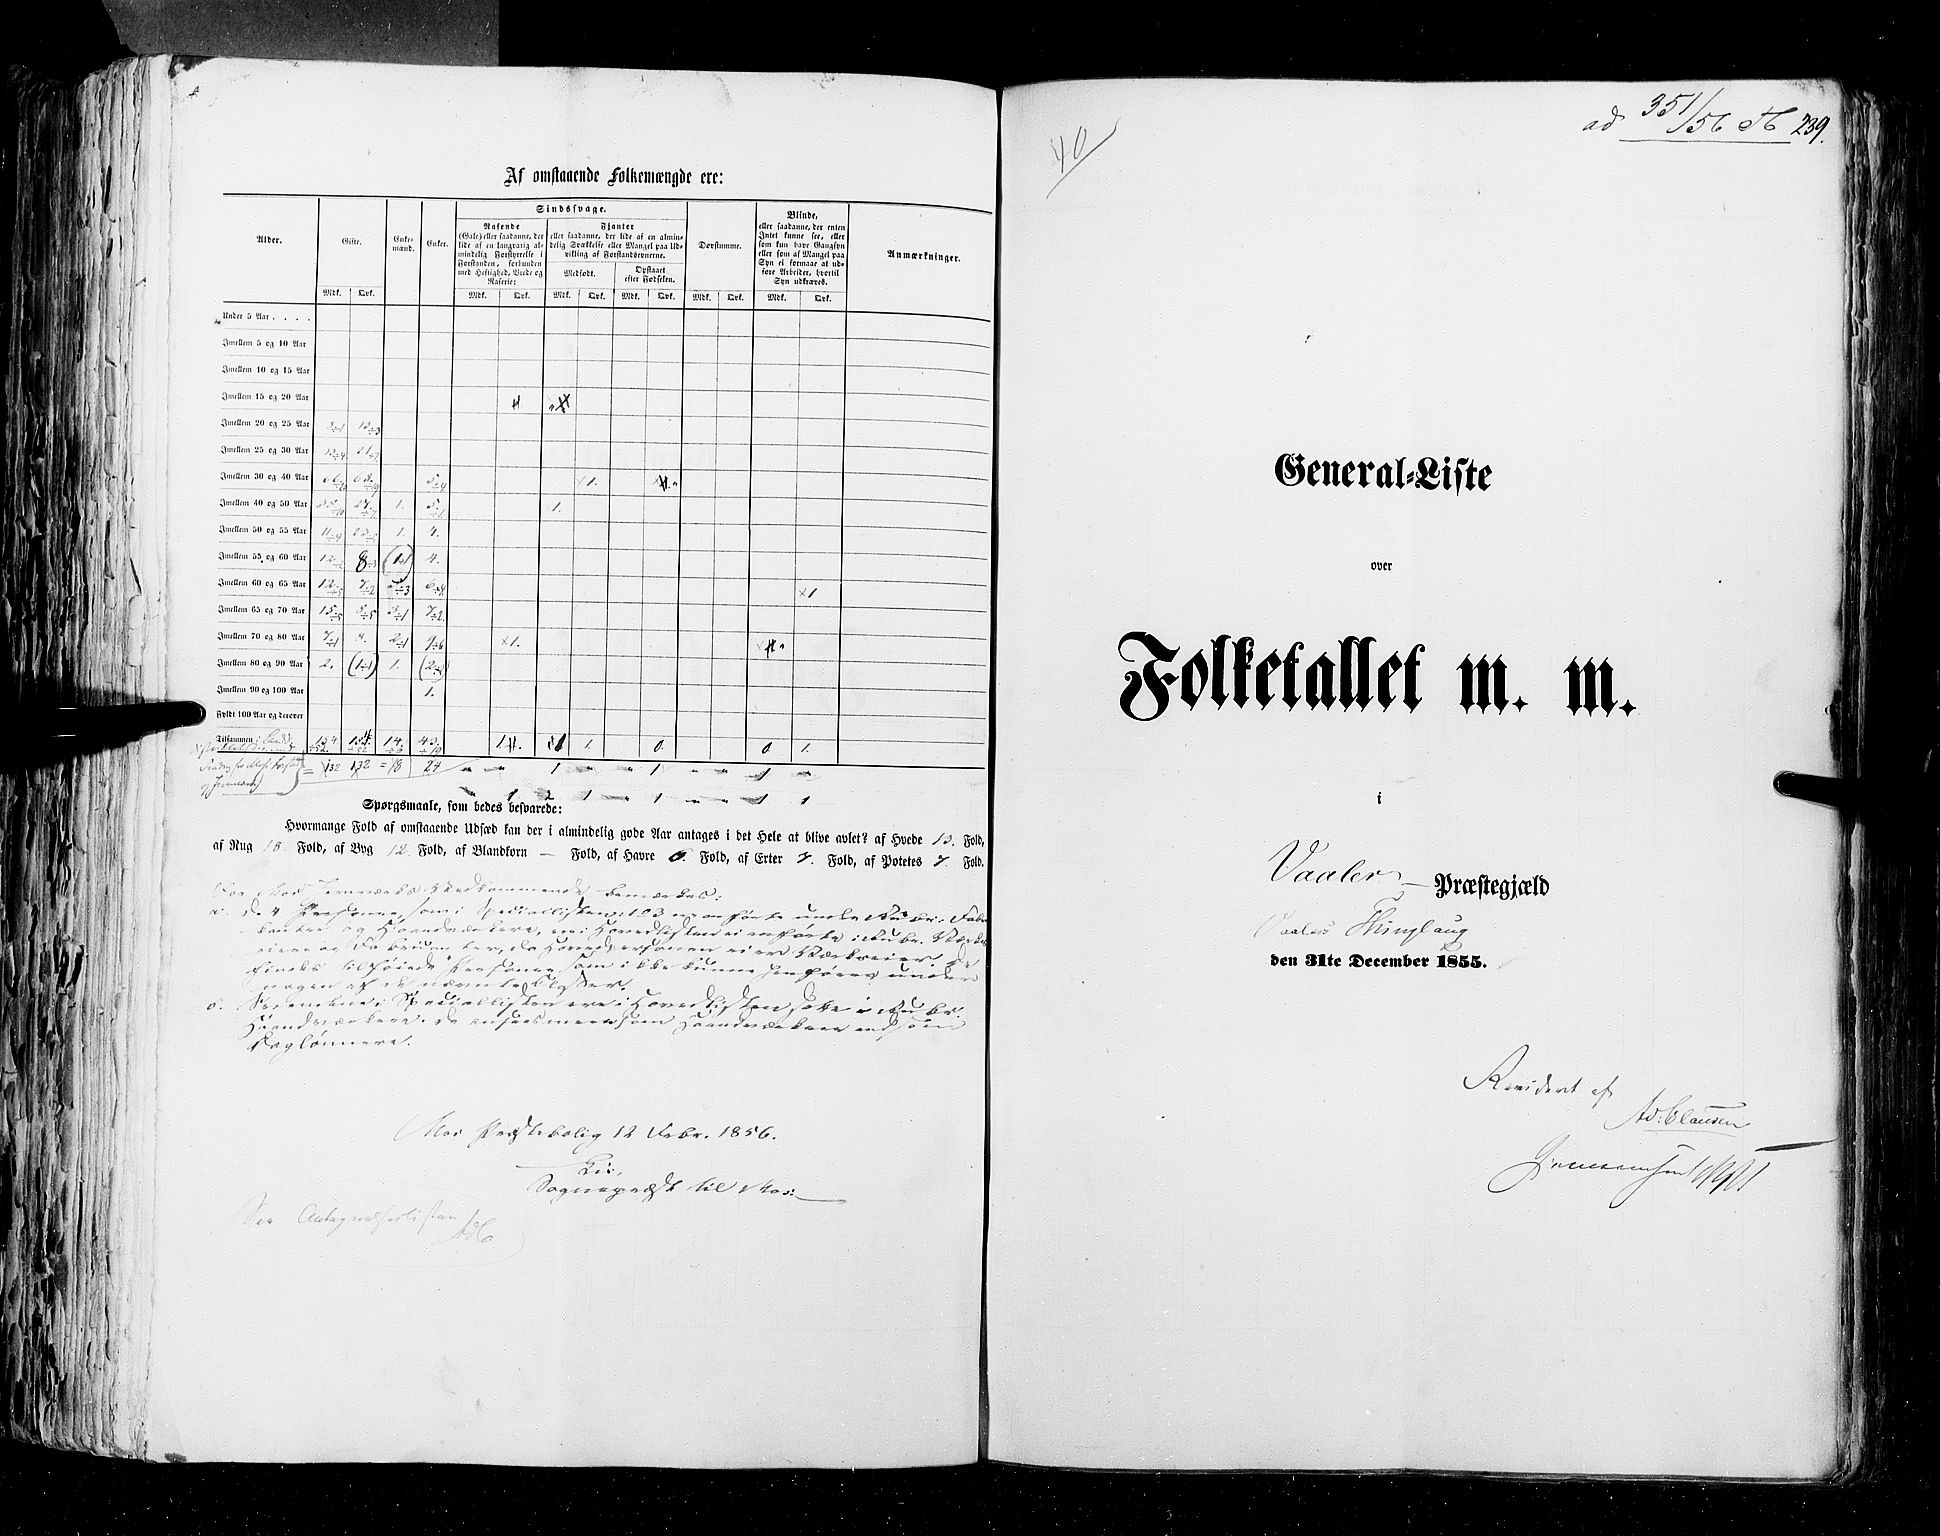 RA, Folketellingen 1855, bind 1: Akershus amt, Smålenenes amt og Hedemarken amt, 1855, s. 239